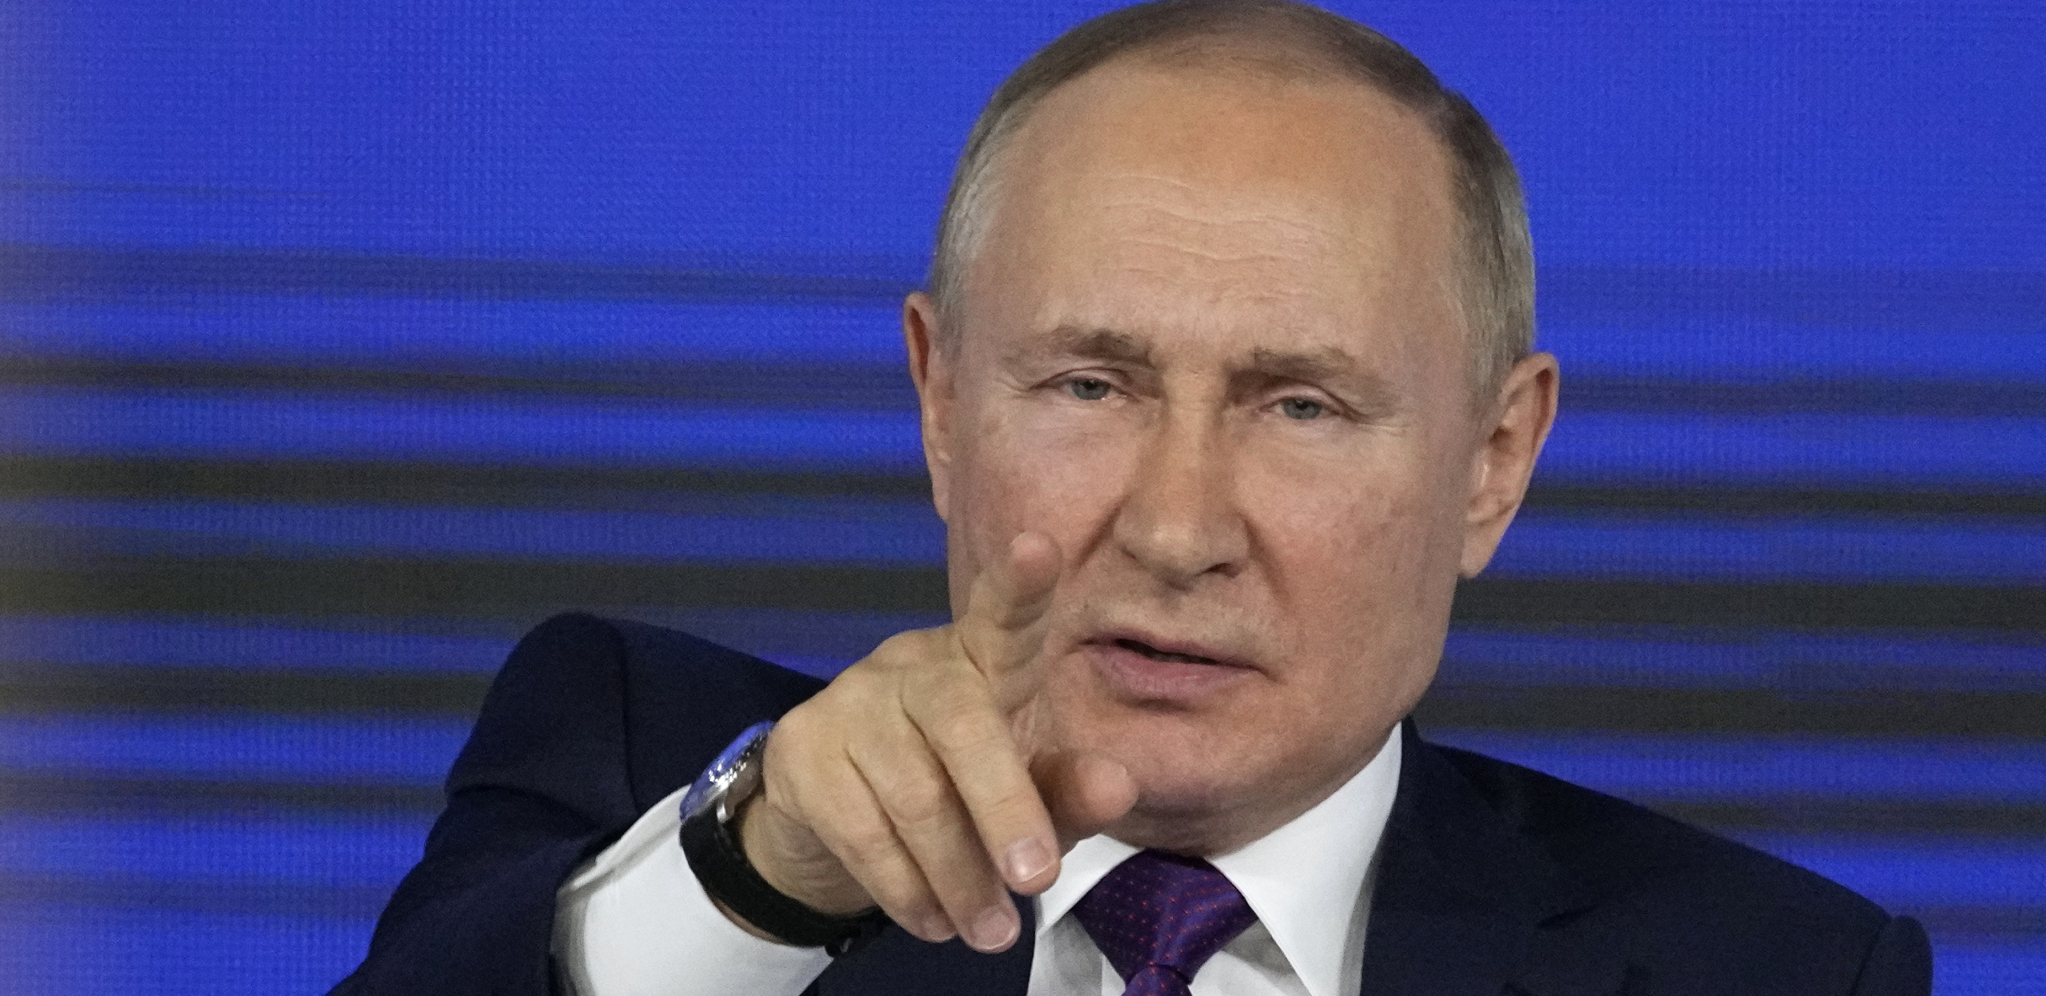 VEST KOJU JE ČEKALA CELA EVROPA Vladimir Putin javno saopštio kad će pasti cena gasa